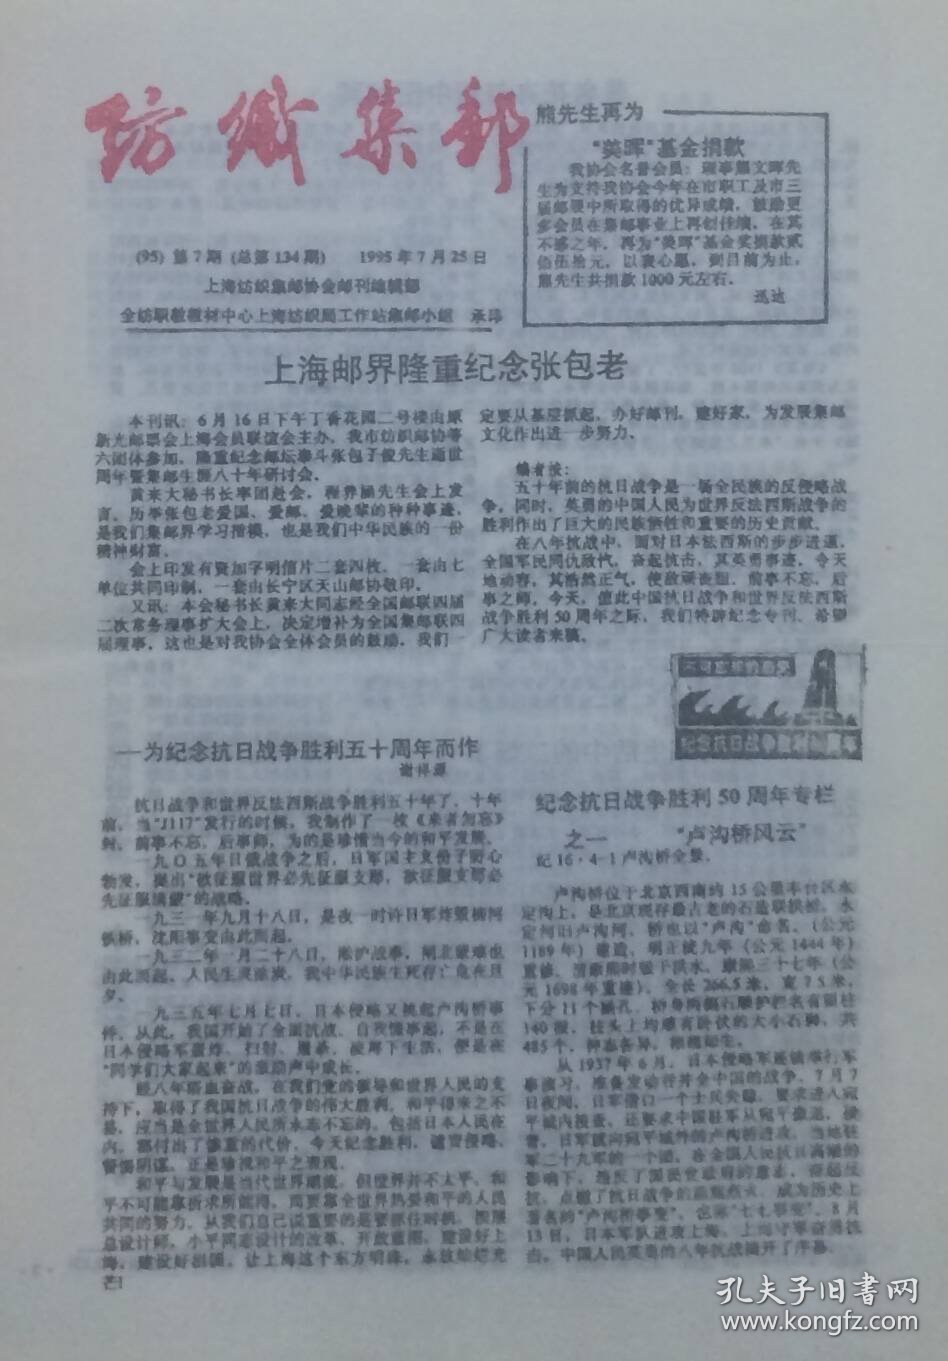 《纺织集邮》1995年第7期（总第134期），上海纺织集邮协会邮刊编辑部。